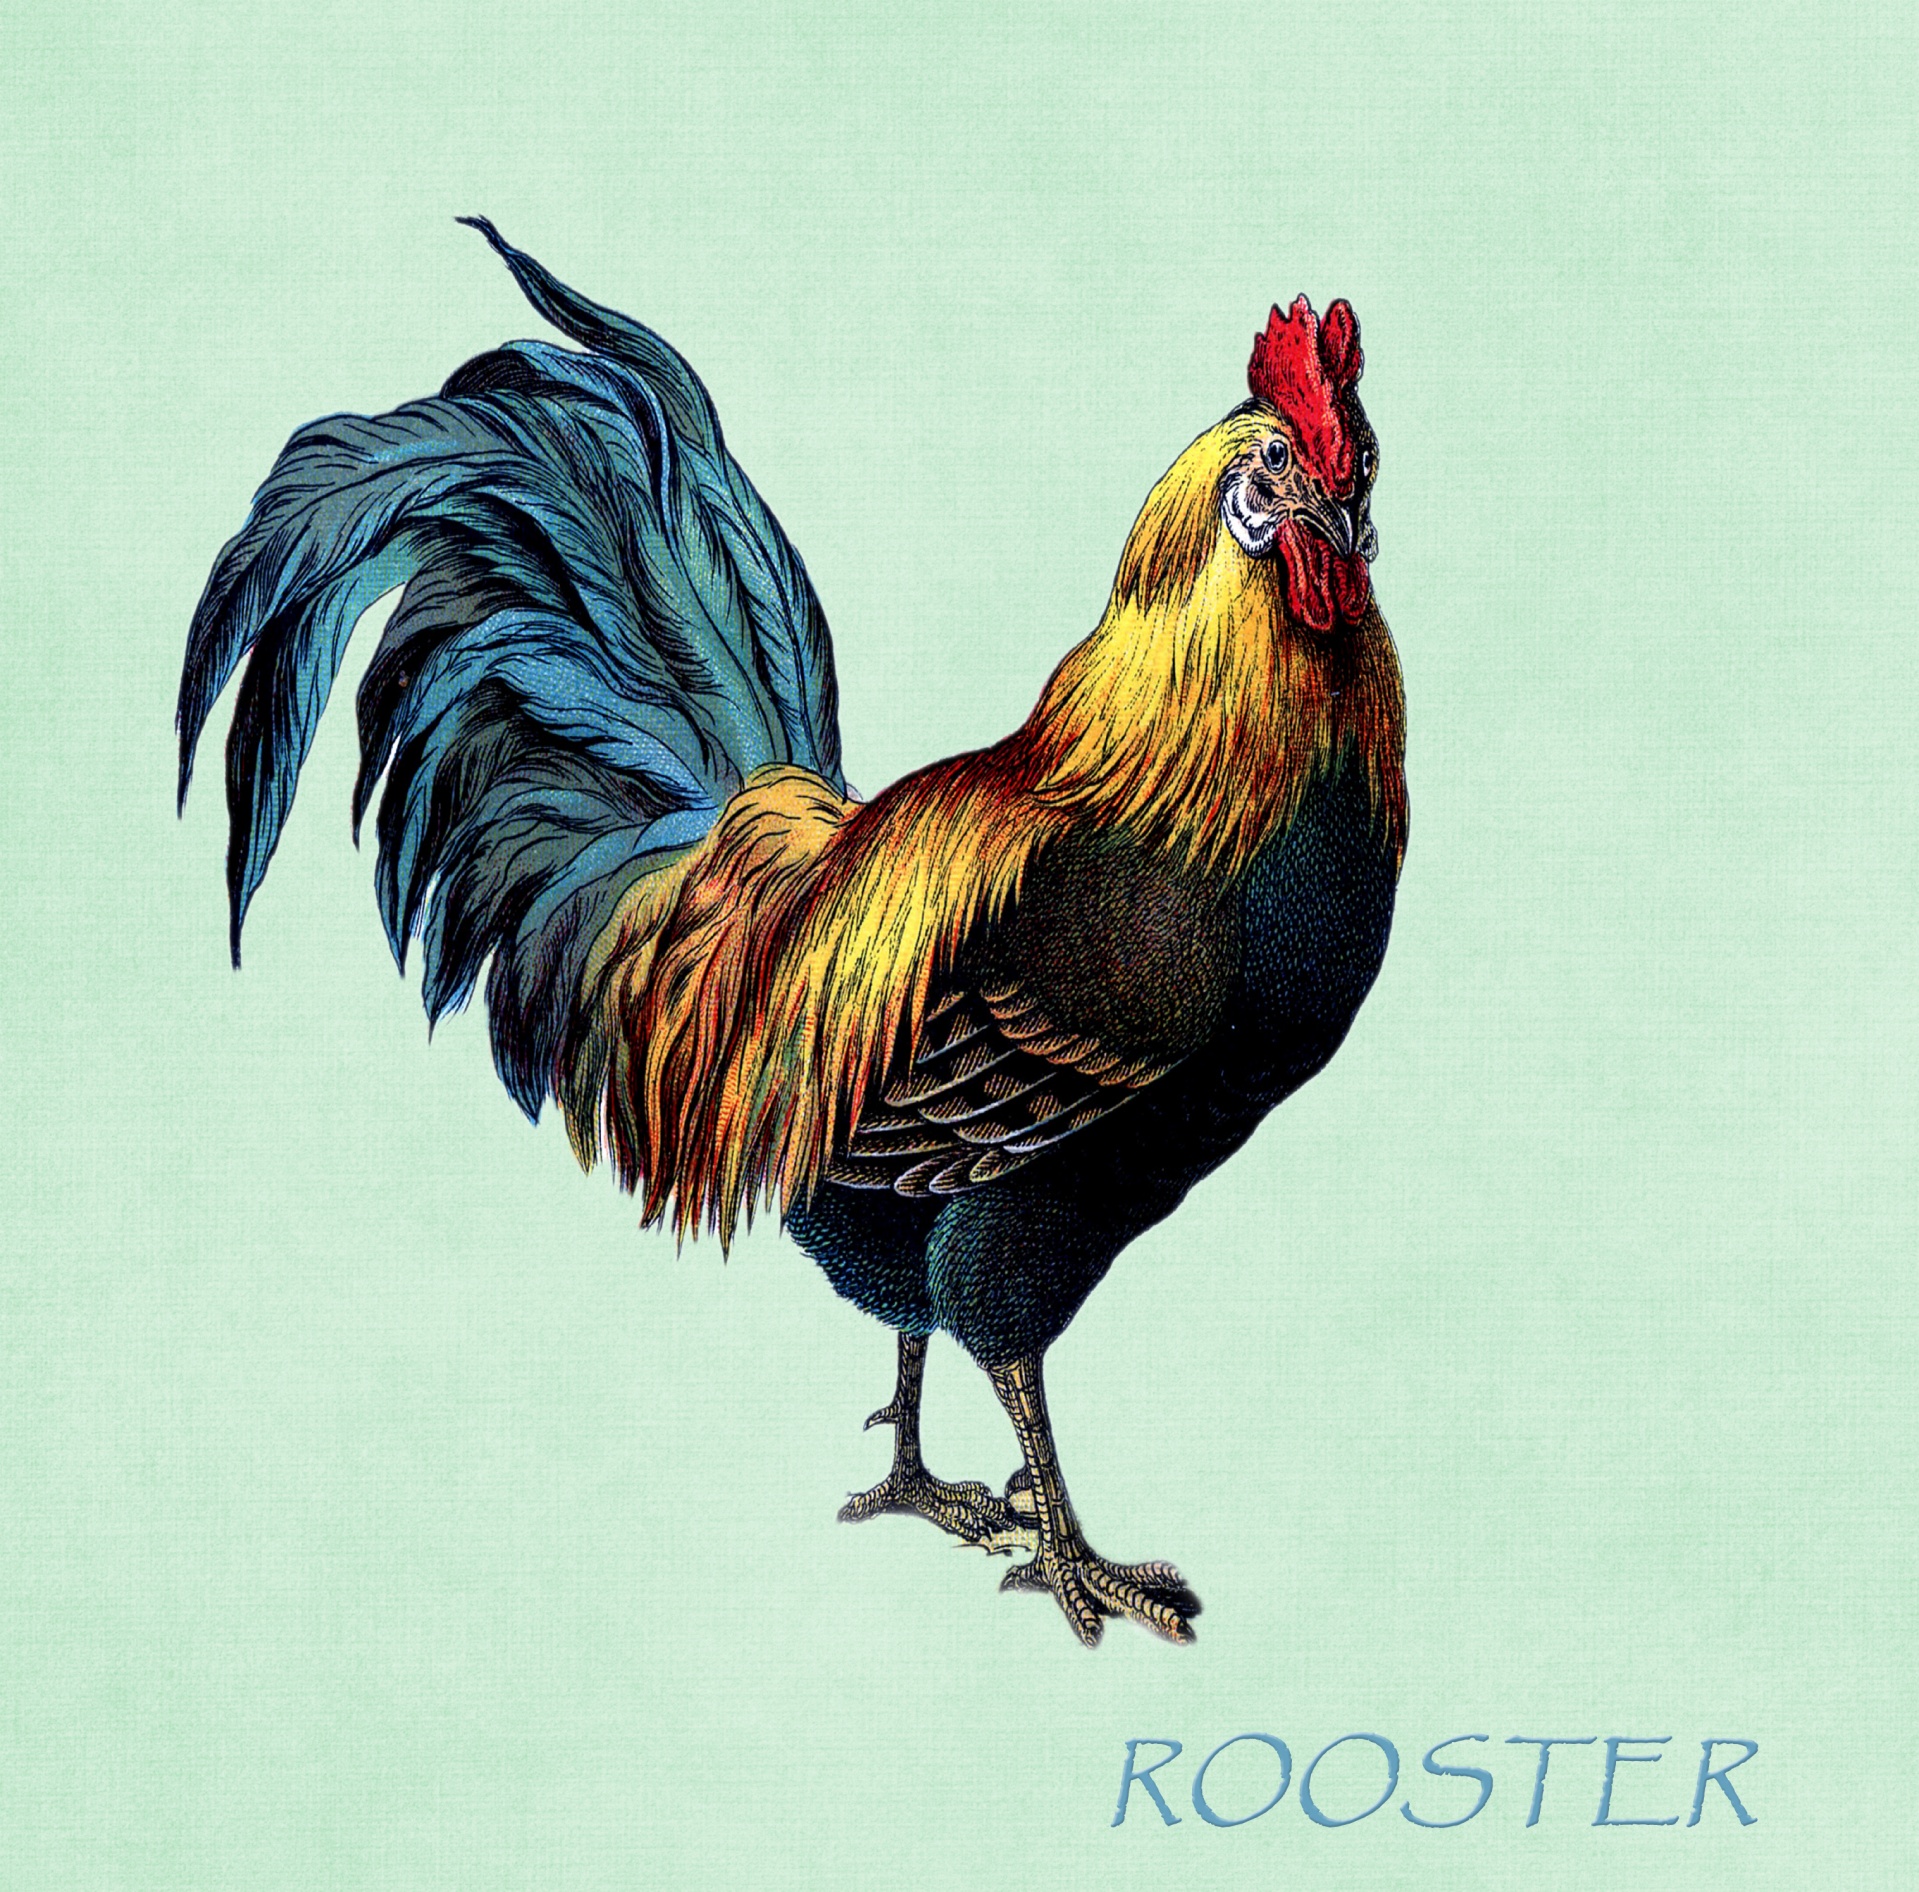 Rooster Vintage Illustration